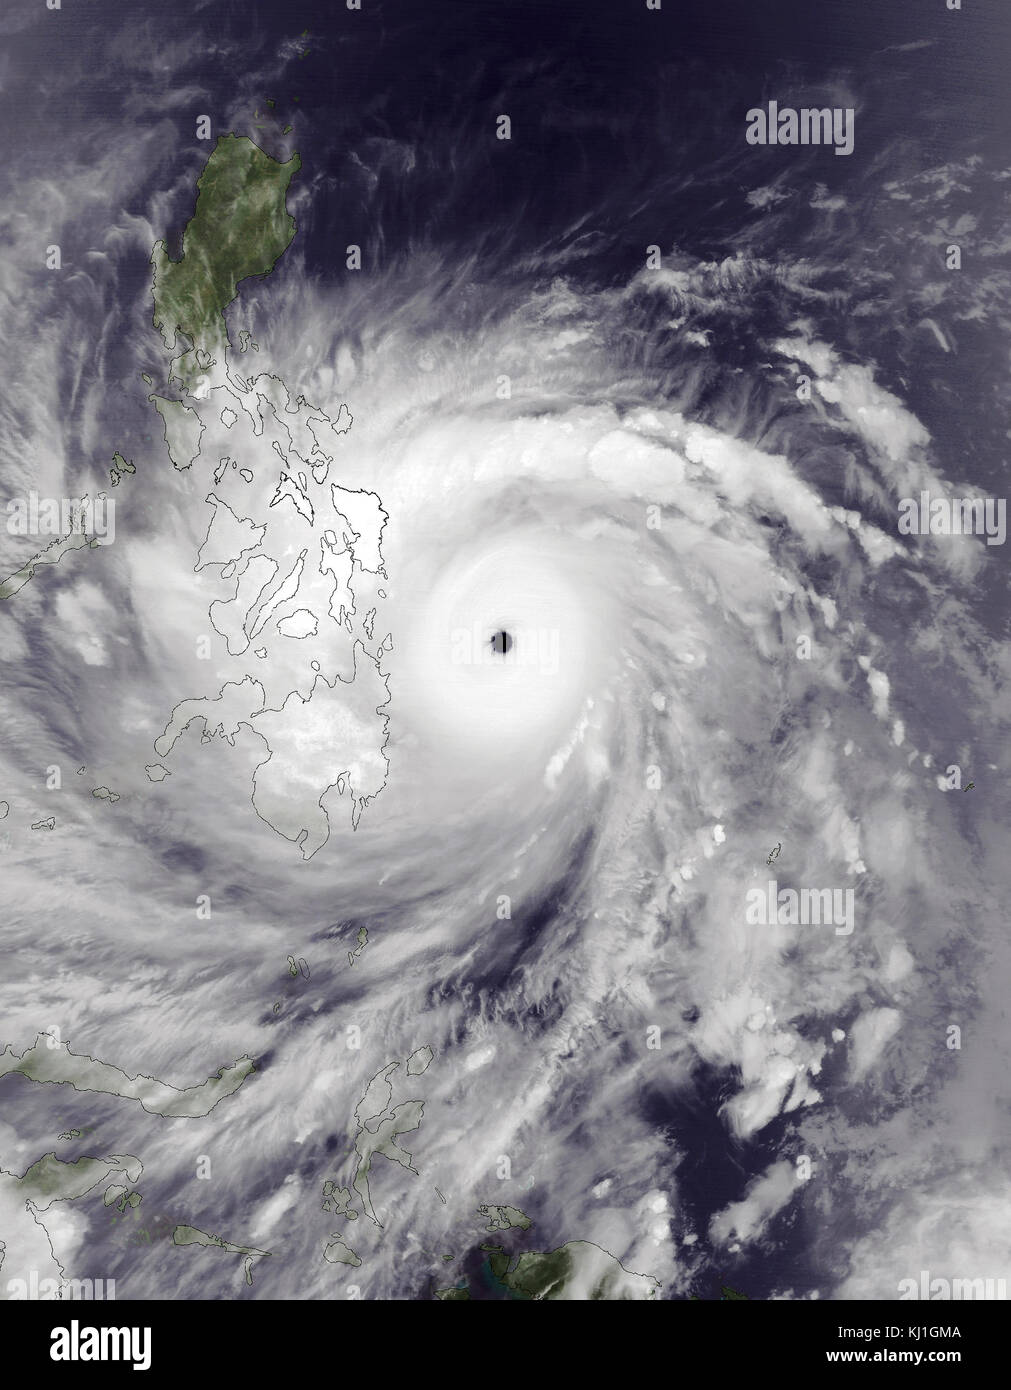 Typhoon Haiyan, wie Super Typhoon Yolanda in den Philippinen bekannt, war einer der intensivsten tropische Wirbelstürme auf Aufzeichnung, die zerstörten Teile Südostasiens, vor allem die Philippinen, am 8. November 2013. Es ist die tödlichste Philippinische Taifun auf Aufzeichnung, tötete mindestens 6.300 Menschen in diesem Land allein Stockfoto